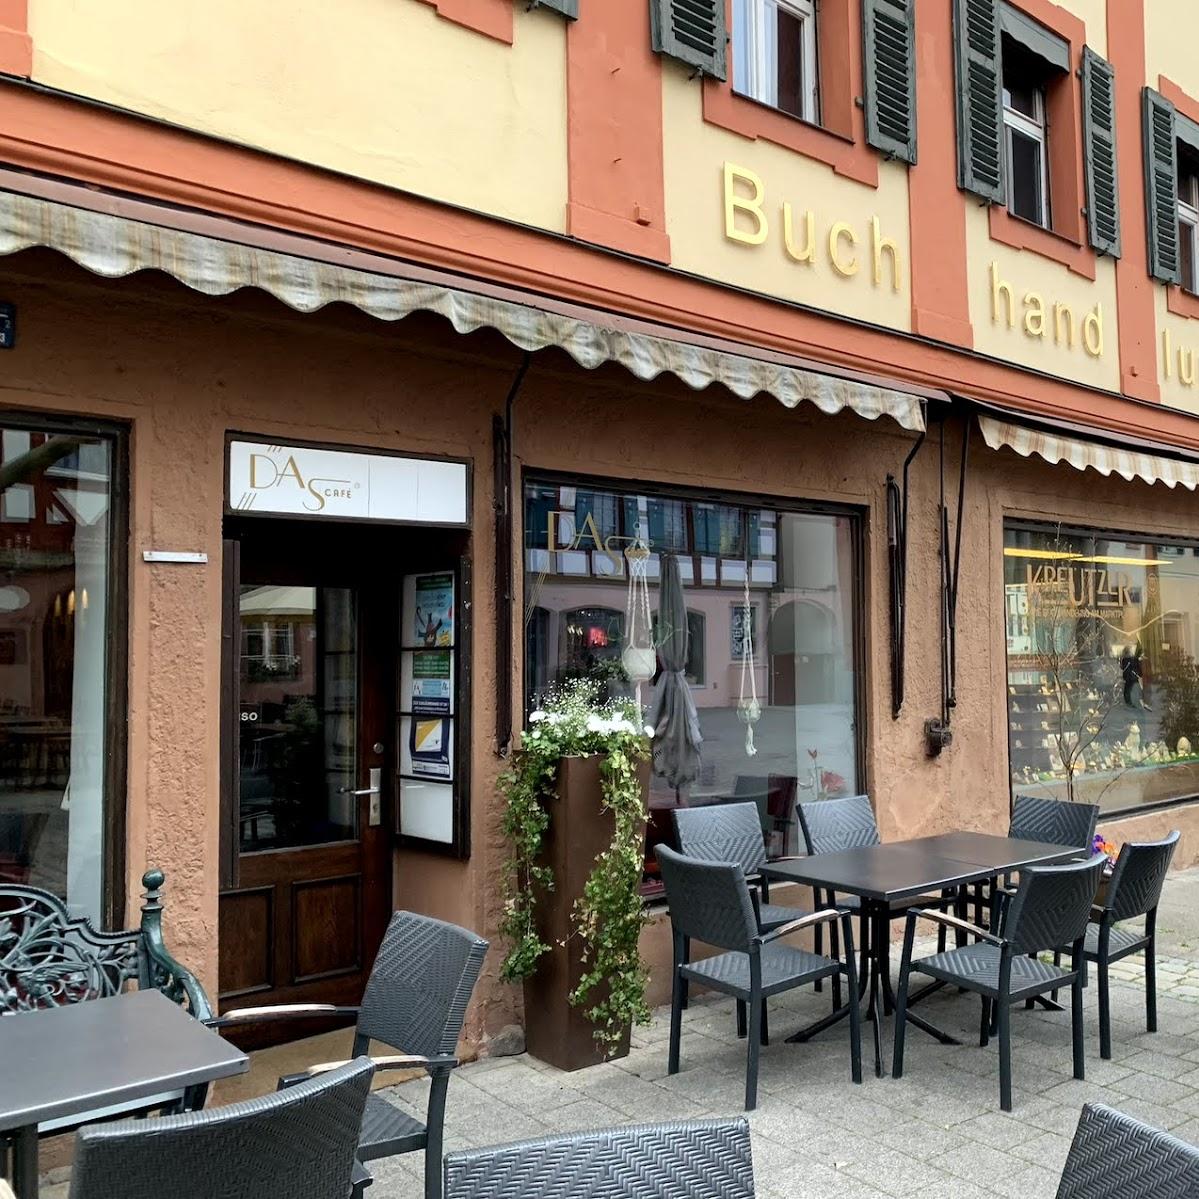 Restaurant "Das Cafe" in Schwabach